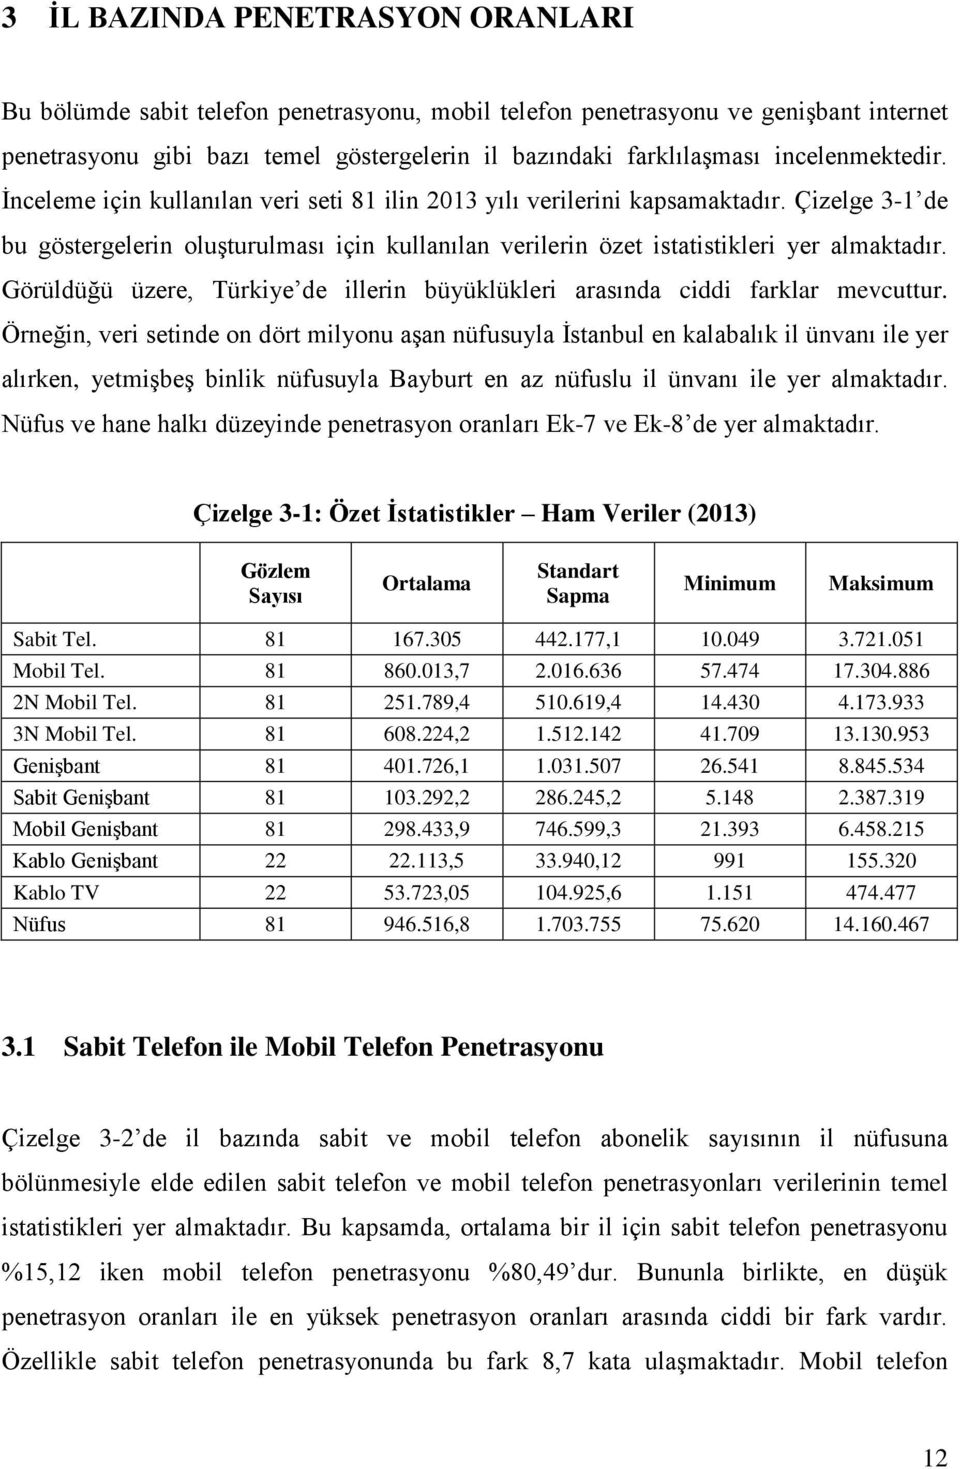 Çizelge 3-1 de bu göstergelerin oluşturulması için kullanılan verilerin özet istatistikleri yer almaktadır. Görüldüğü üzere, Türkiye de illerin büyüklükleri arasında ciddi farklar mevcuttur.